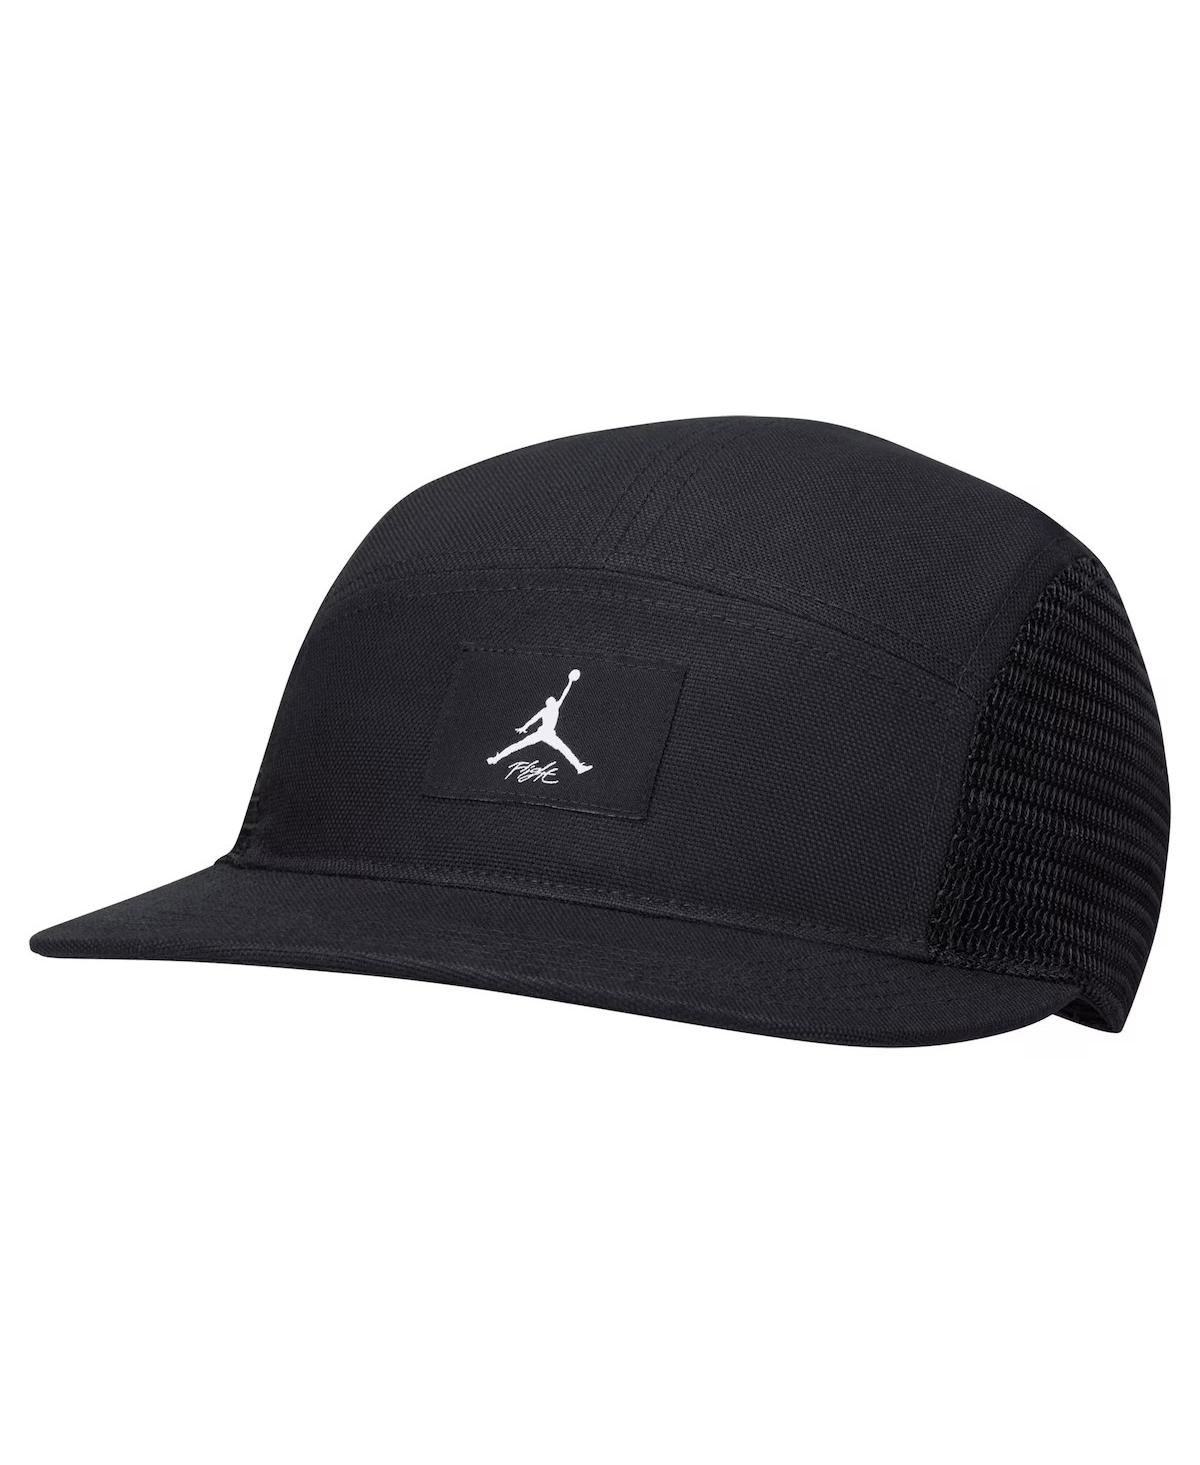 Jordan Men's And Women's Black Jumpman Fly Adjustable Hat